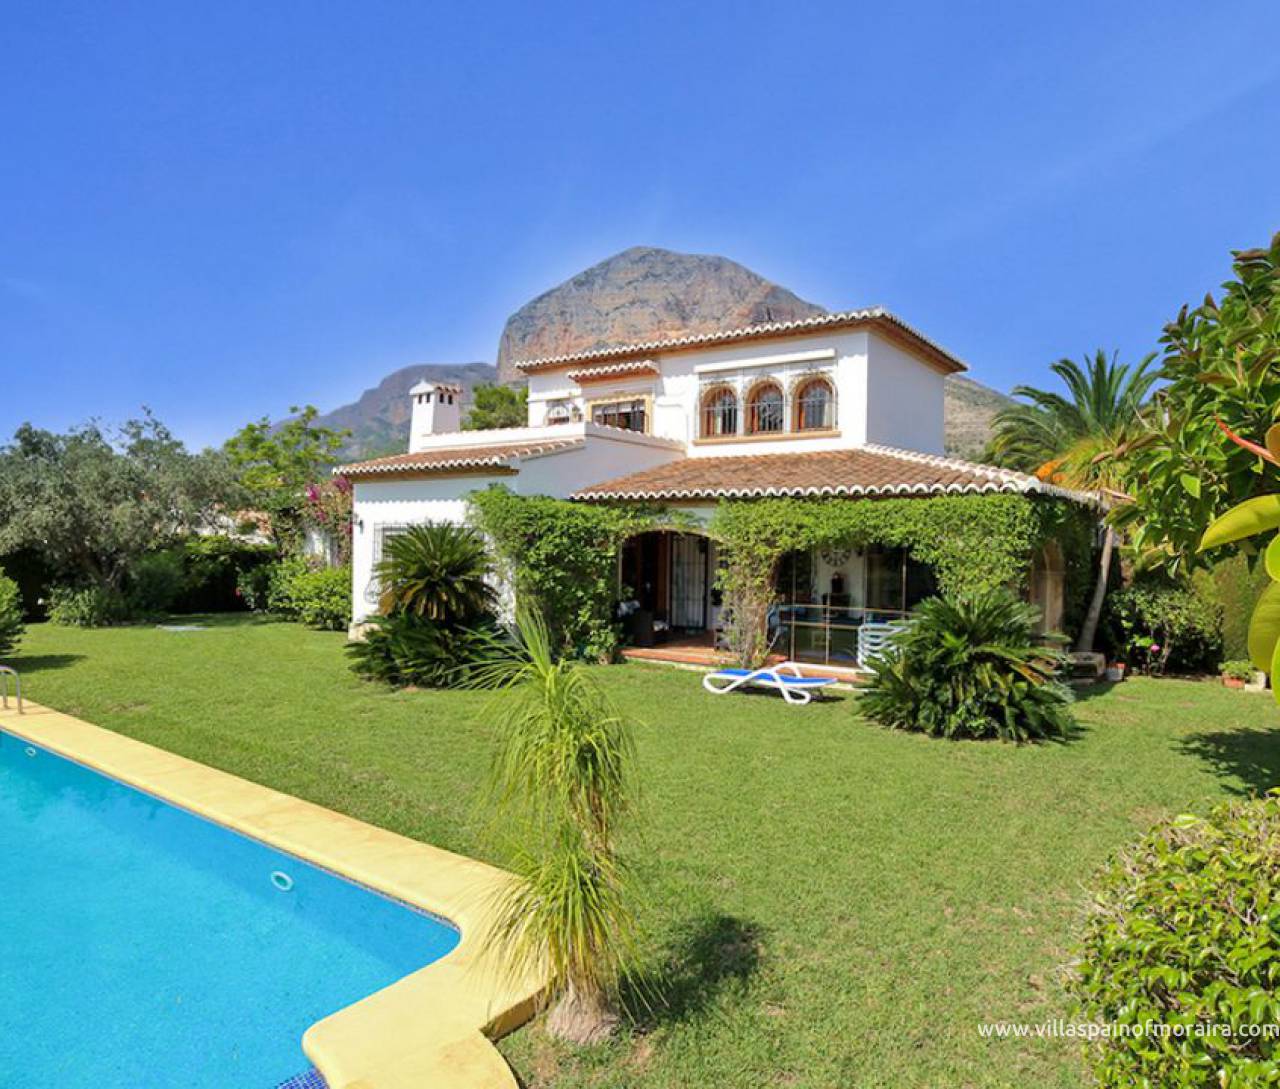 Javea finca style villa for sale